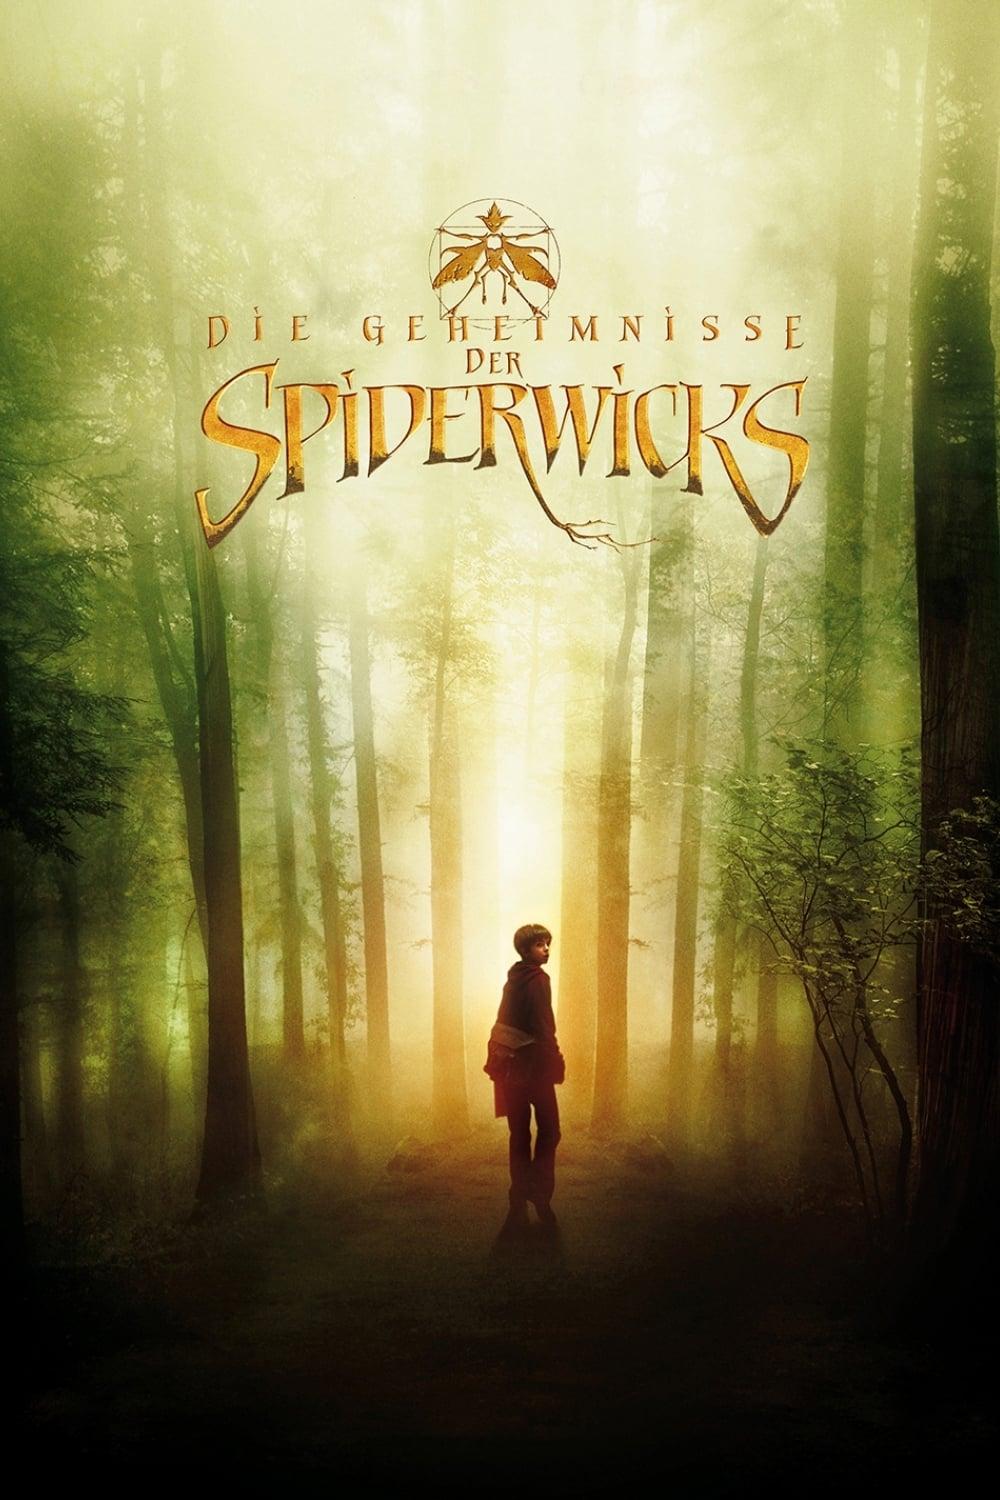 Die Geheimnisse der Spiderwicks poster